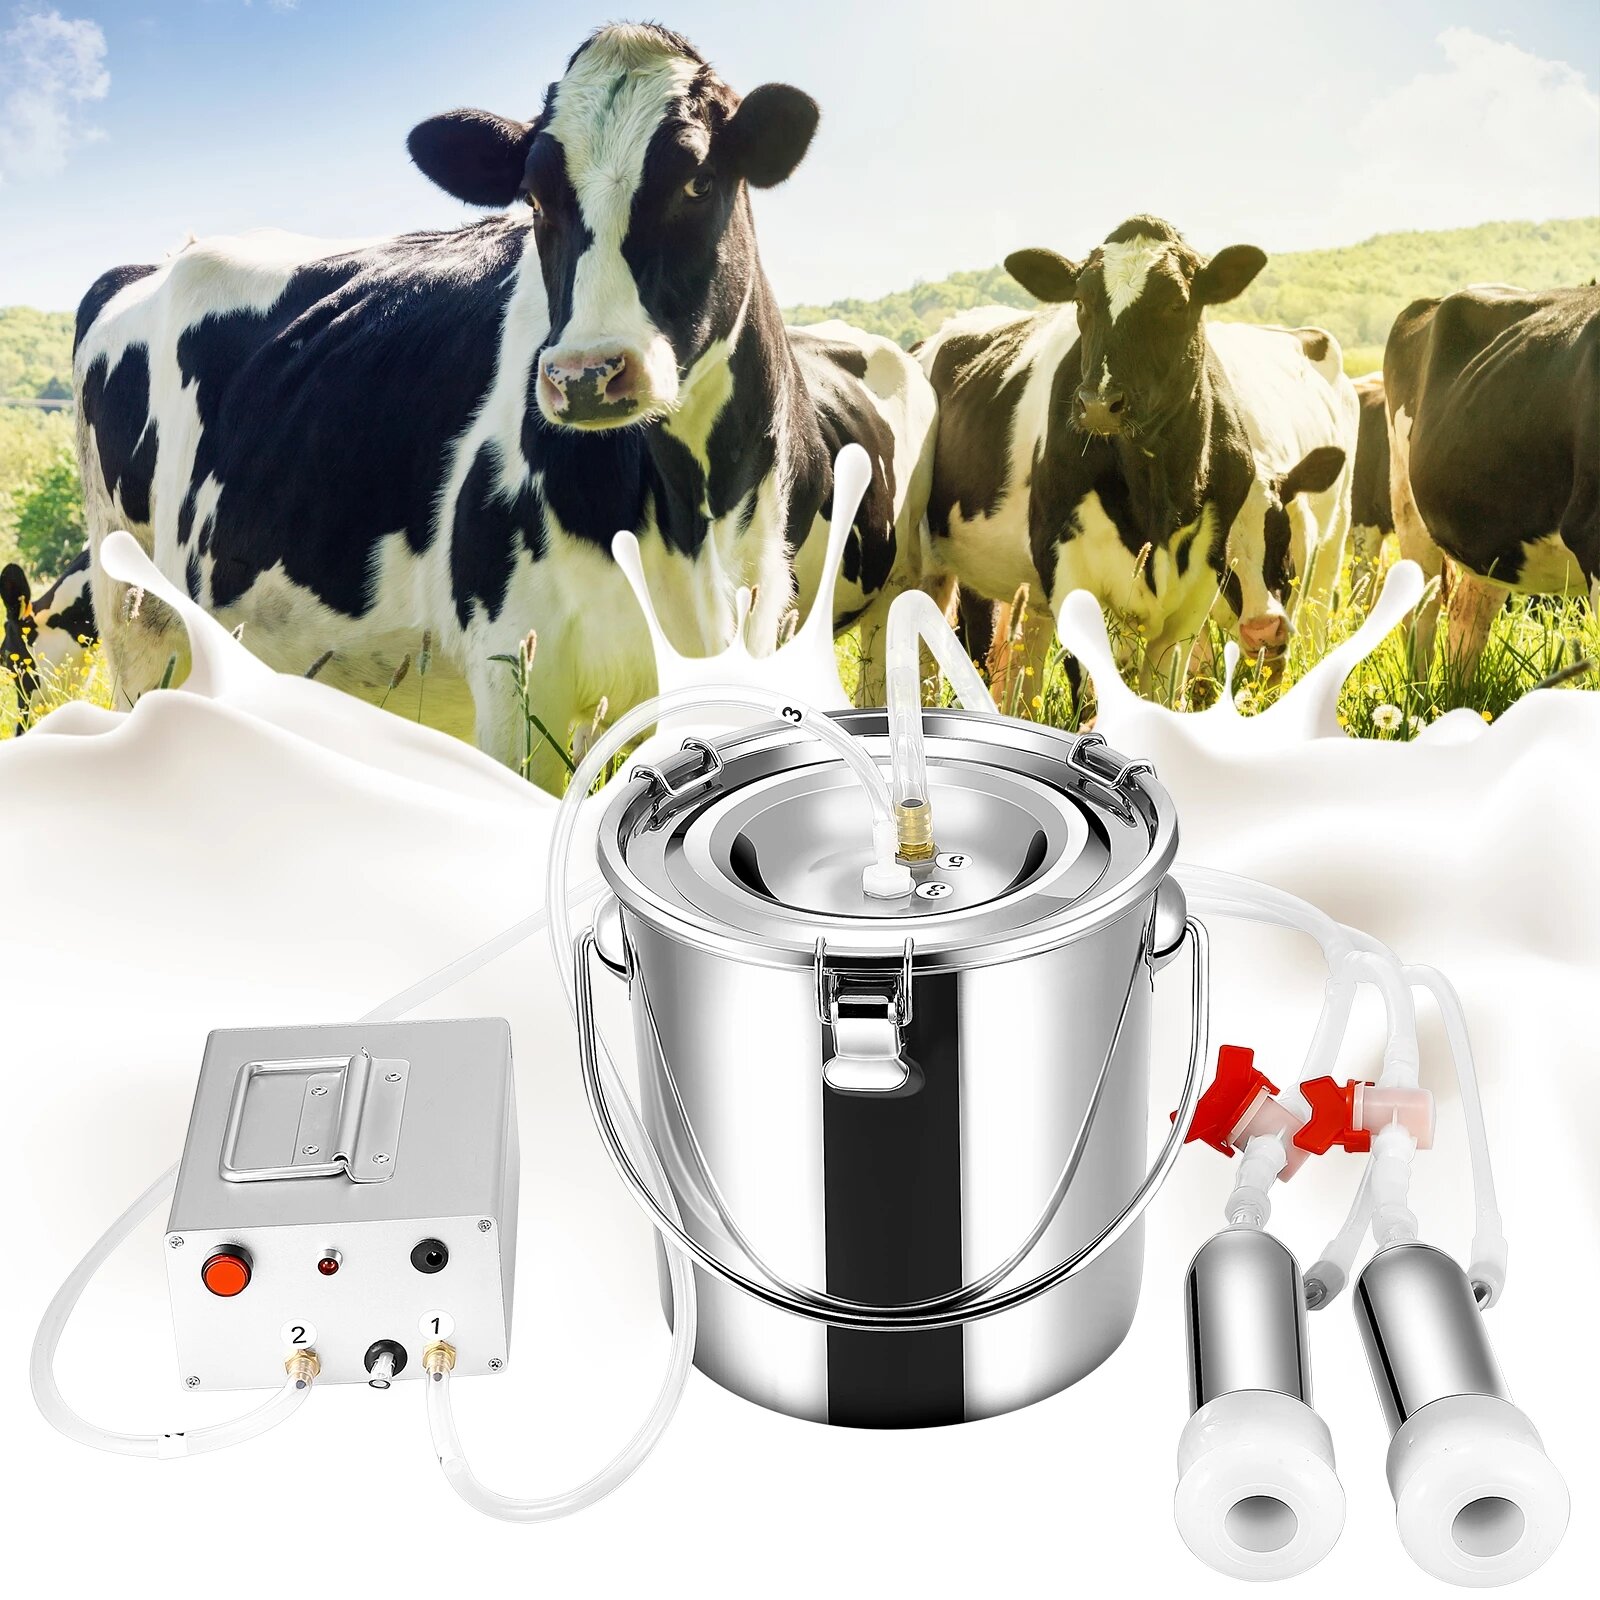 7L TELAM Elektrische Melkmaschinen Kit 7L Kuhmelkmaschine Tragbare Milchkühe Melker Vakuum Pulsations Saugpumpen Melkmaschine Automatische Tragbare Kuhmelkmaschine für Bauernhöfe oder Familien